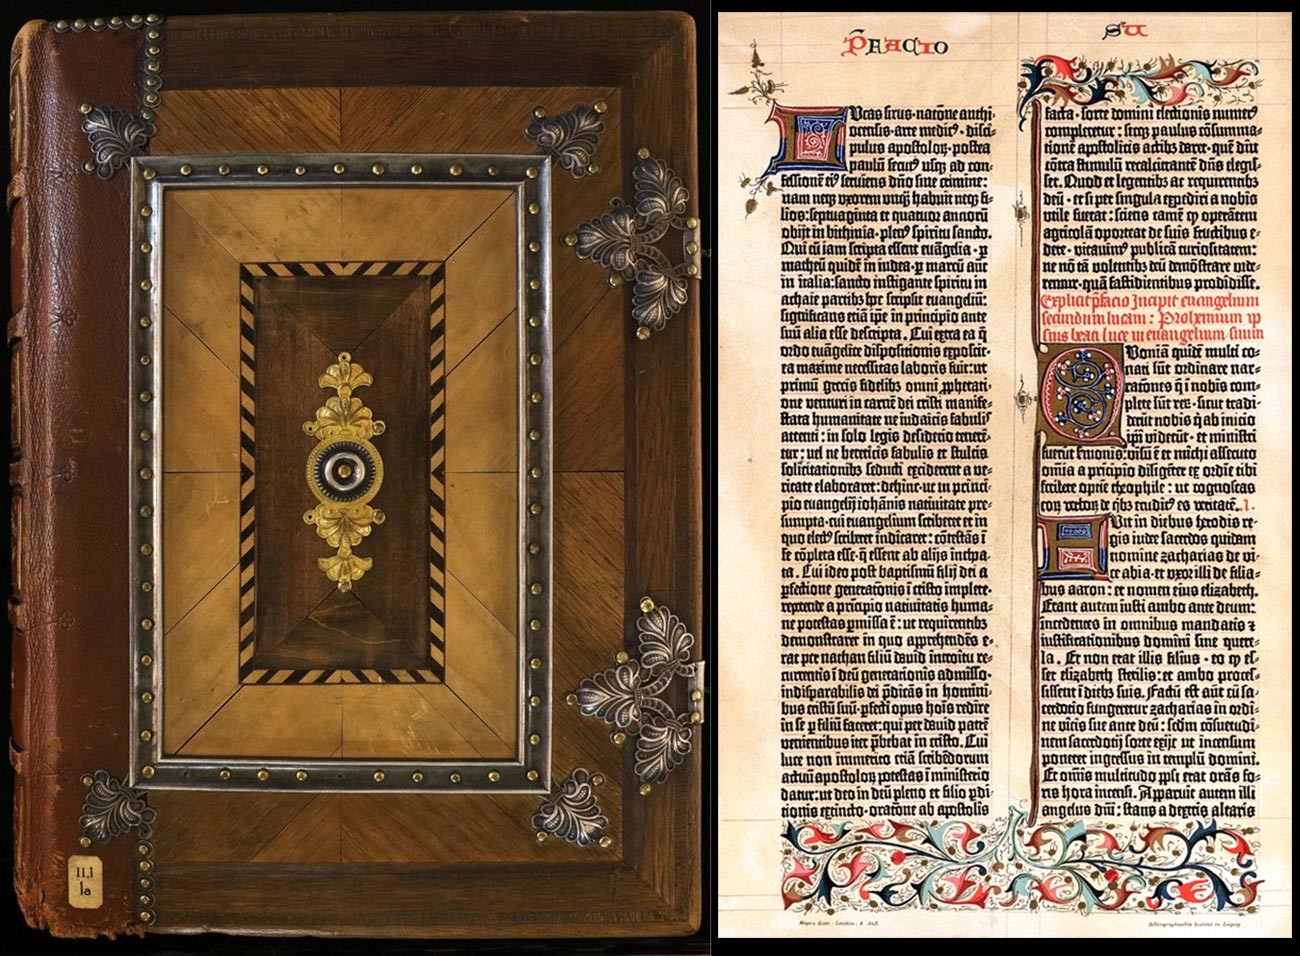 Gutenbergova Biblija

